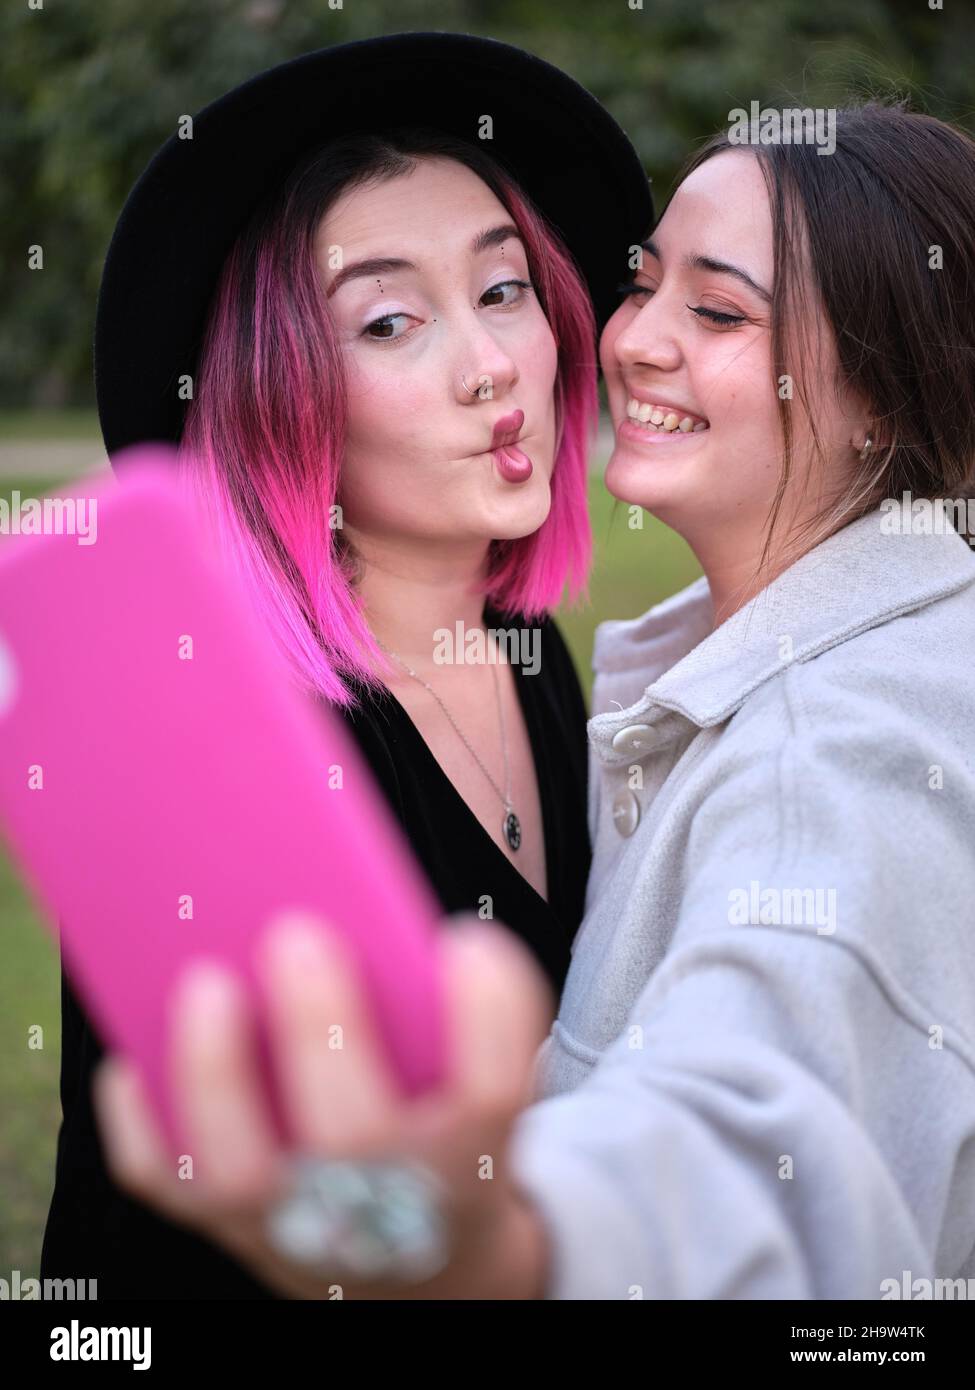 Zwei Freunde, die Spaß haben, ein Selfie zu machen, indem sie Lippengesten machen Stockfoto